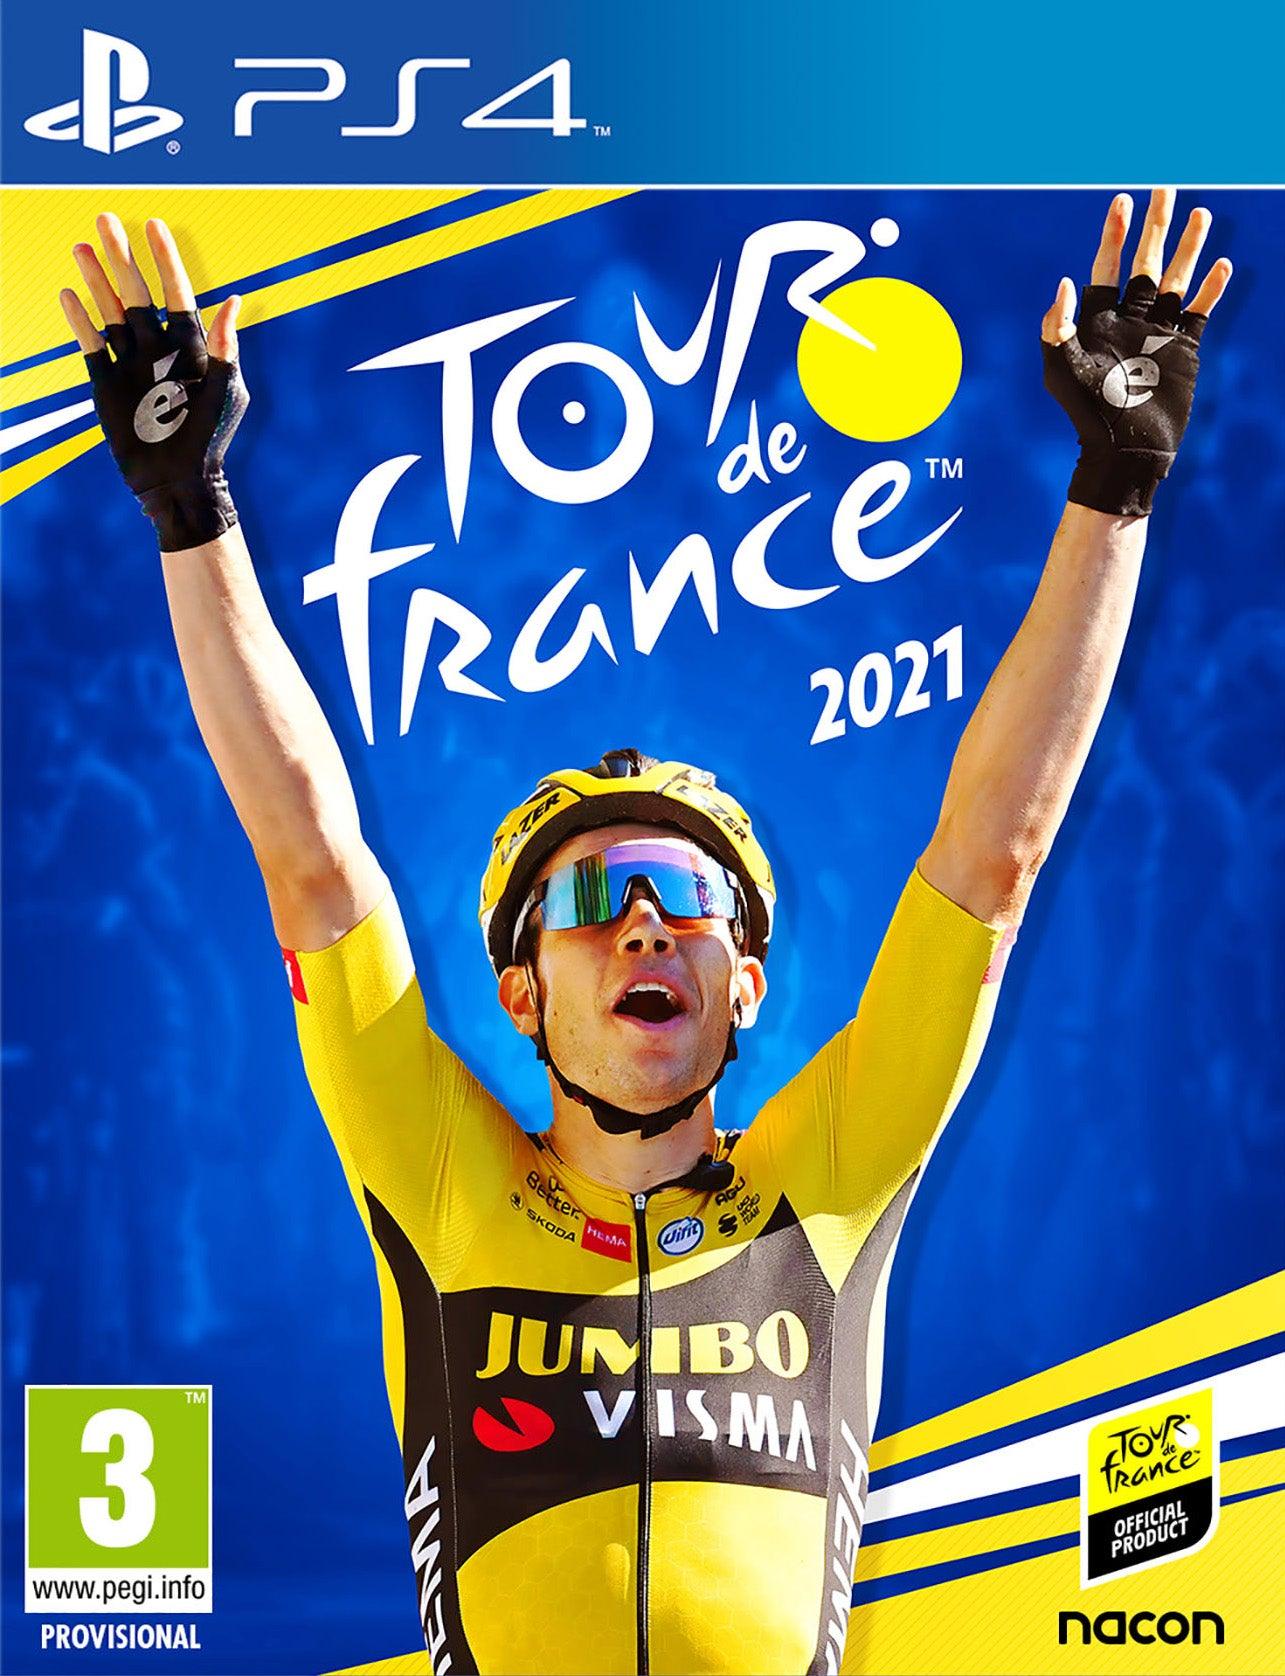 Tour De France 2021 - Want a New Gadget